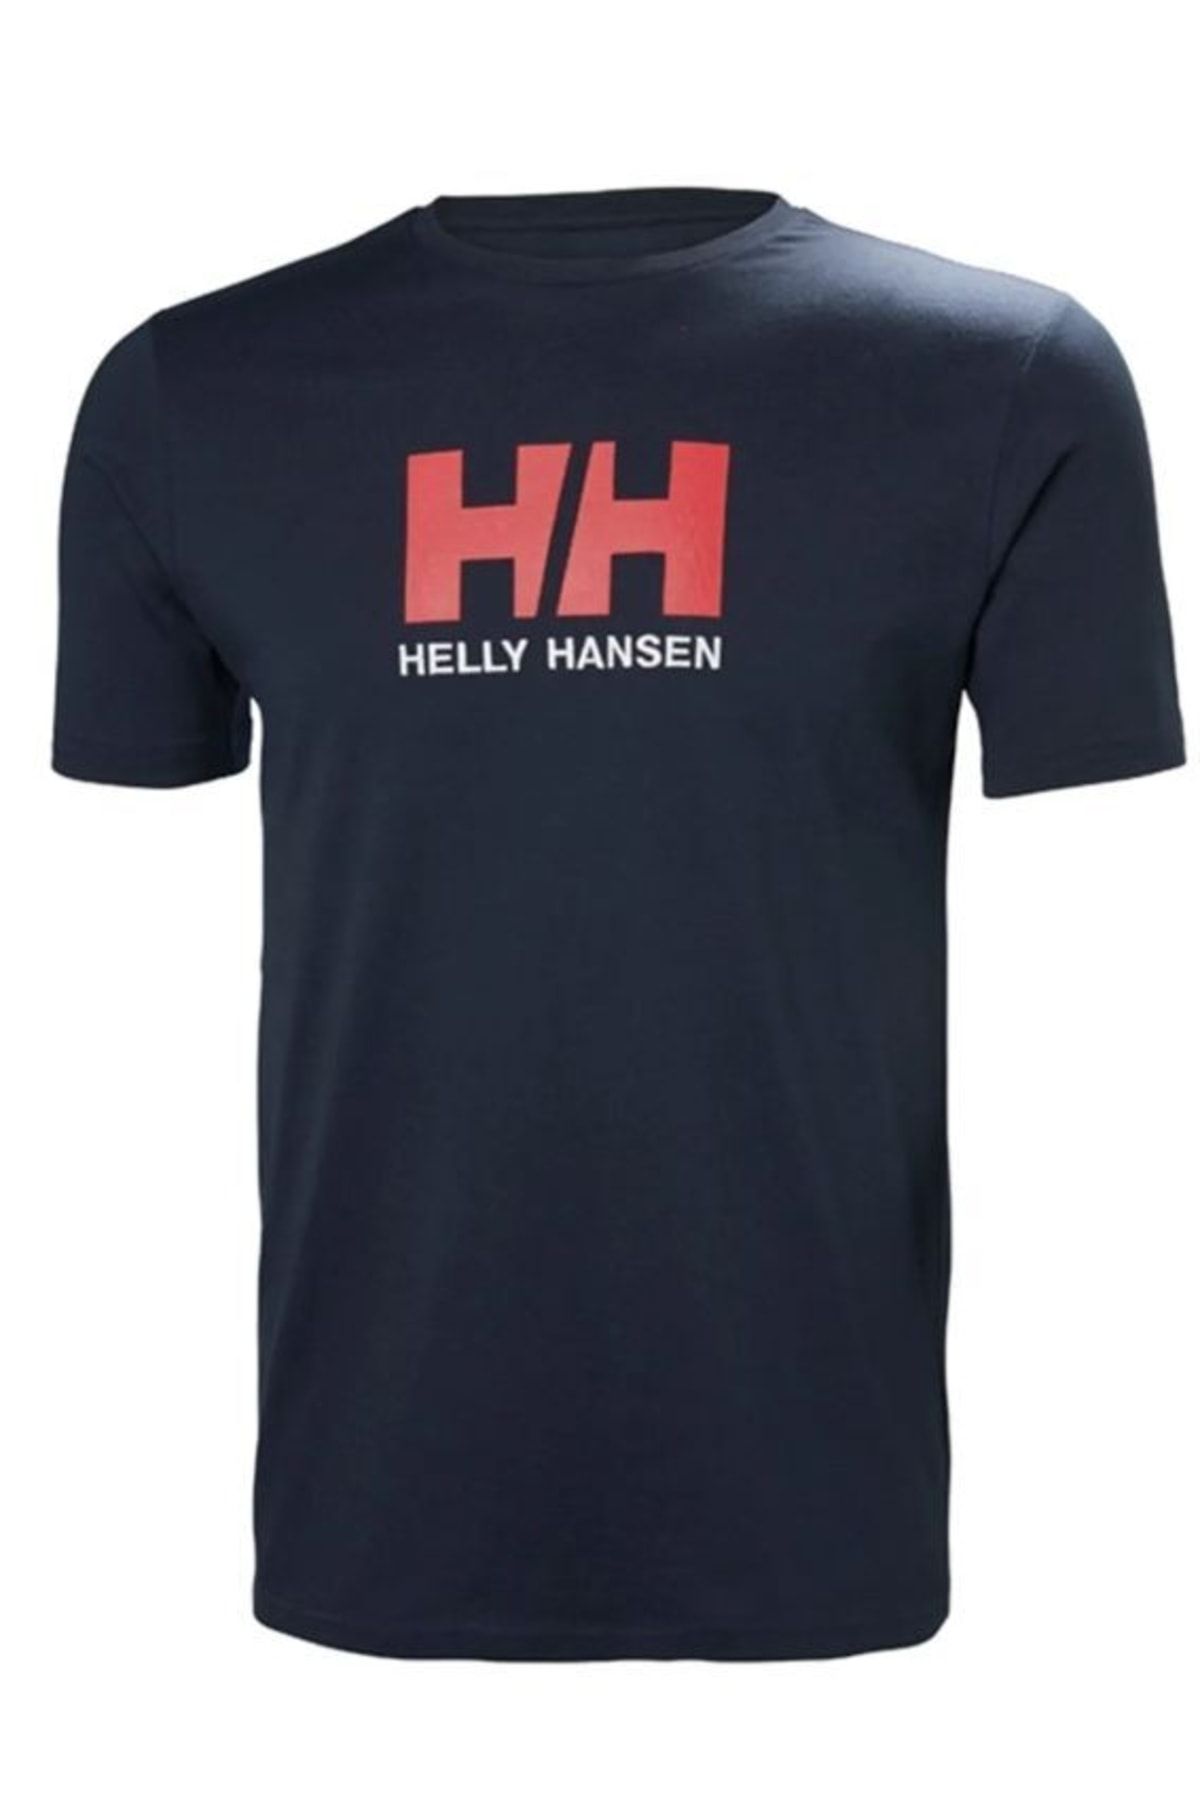 Helly Hansen Hh Logo Erkek T-shirt Lacivert Hha.33979.597